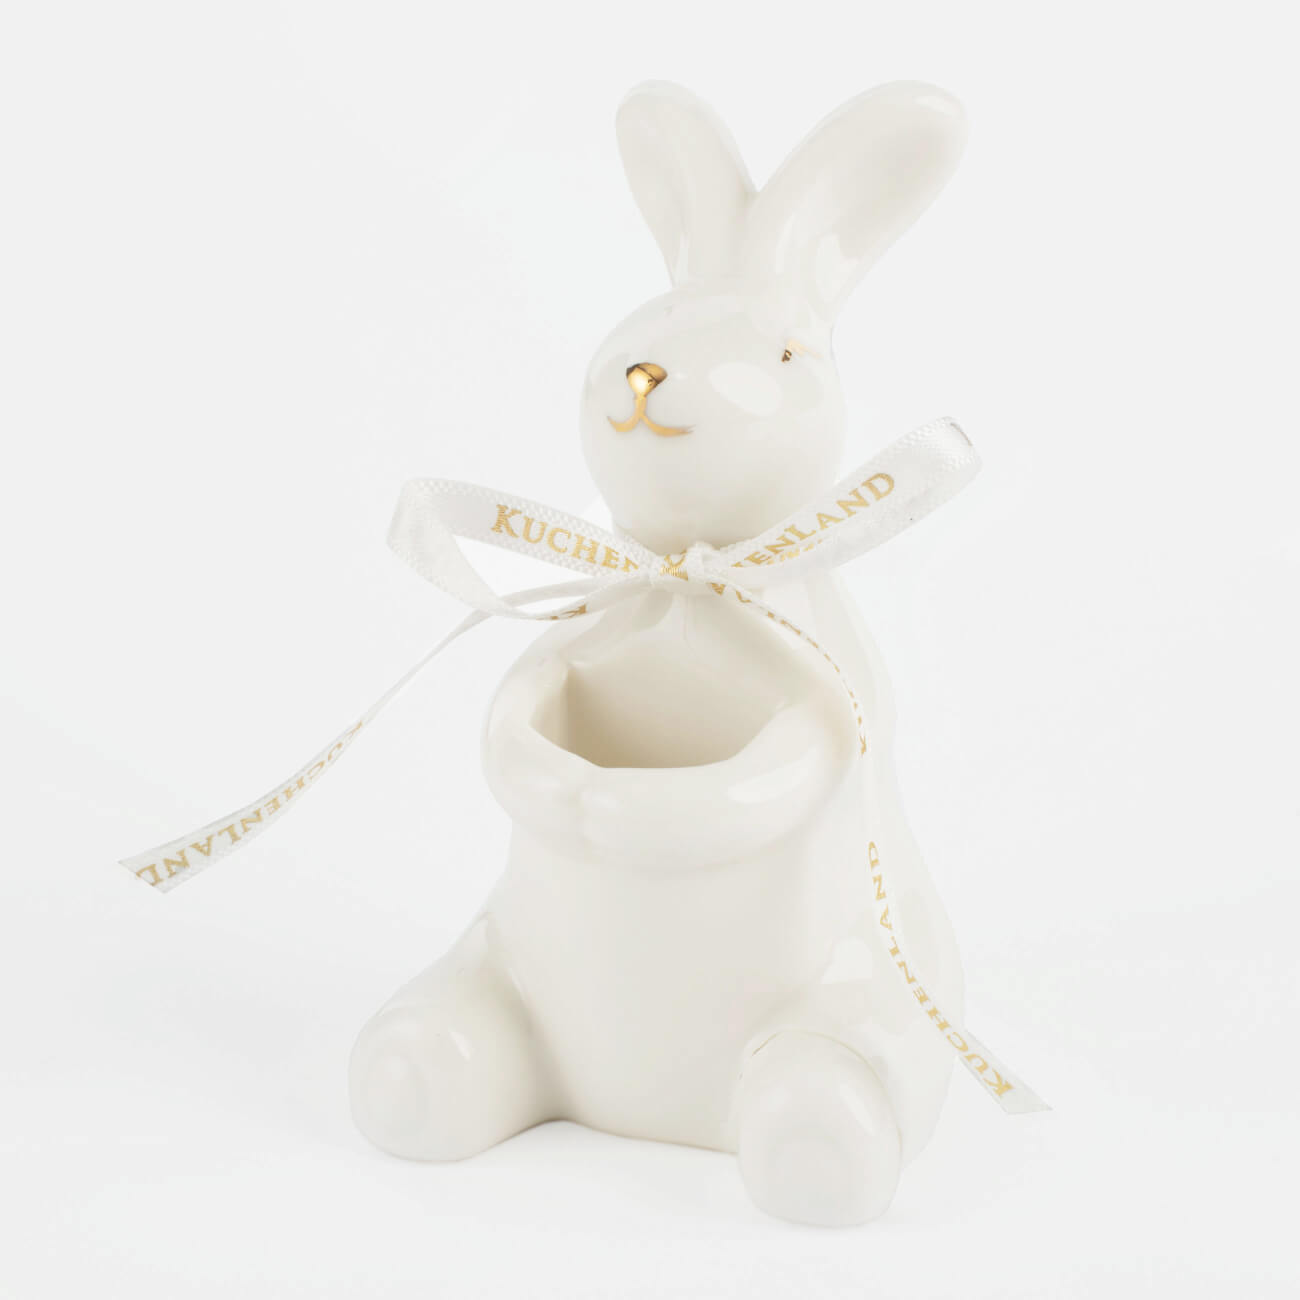 статуэтка 14 см керамика бело золотистая крольчиха и крольчонок easter gold Подставка для зубочисток, 10 см, фарфор P, бело-золотистая, Кролик, Easter gold